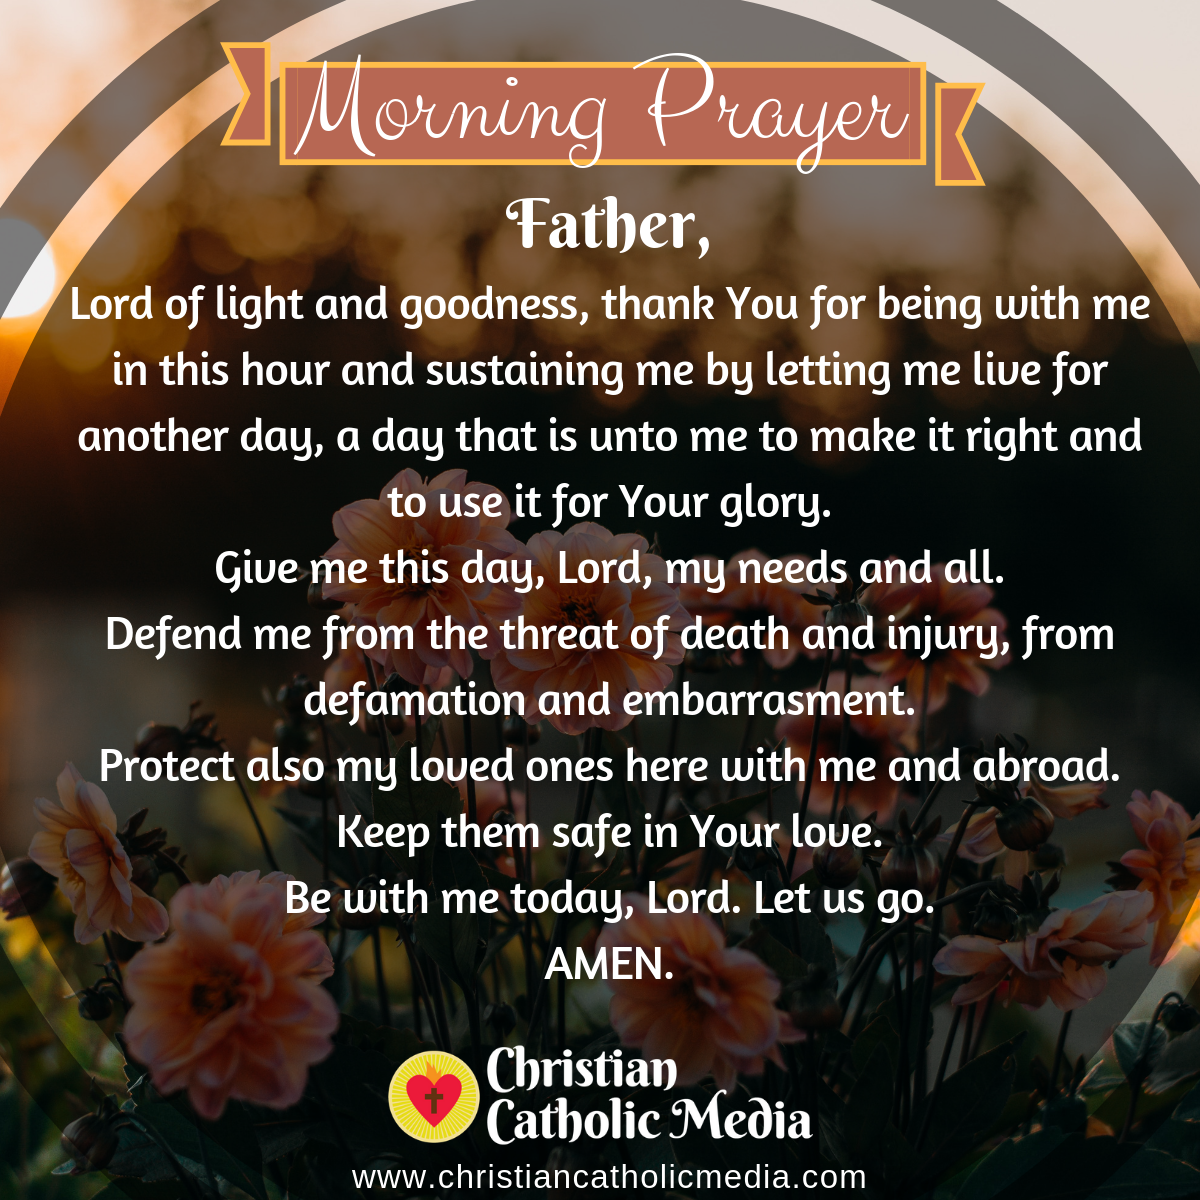 Morning Prayer Catholic Monday 5112020 Christian Catholic Media